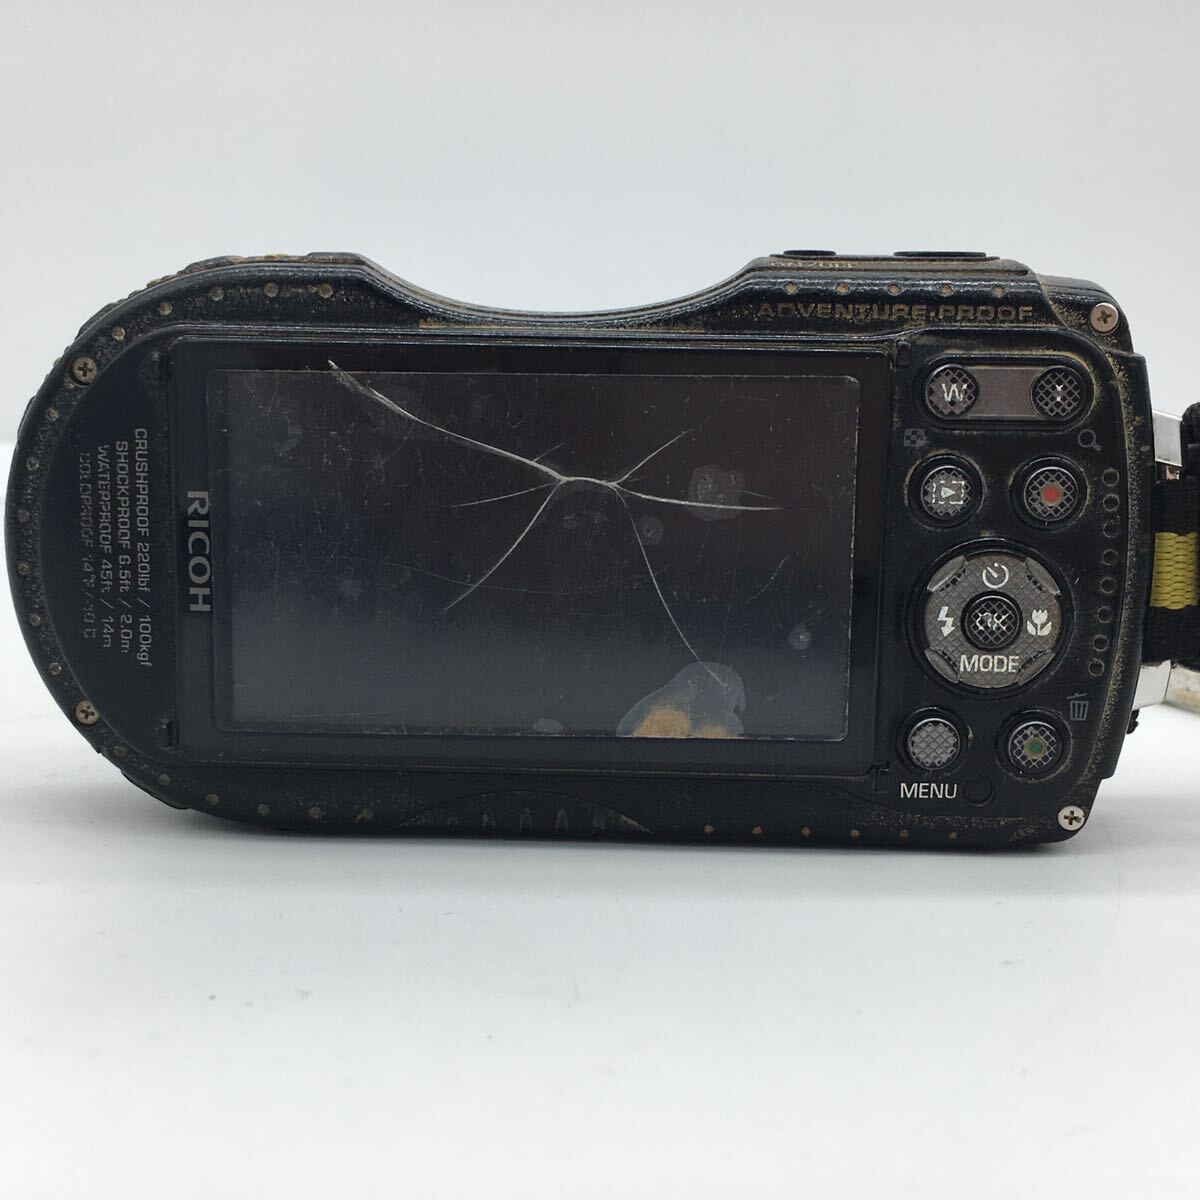 RICHO Ricoh WG-4 цифровая камера желтый цвет водонепроницаемый ударопрочный аккумулятор приложен работоспособность не проверялась 